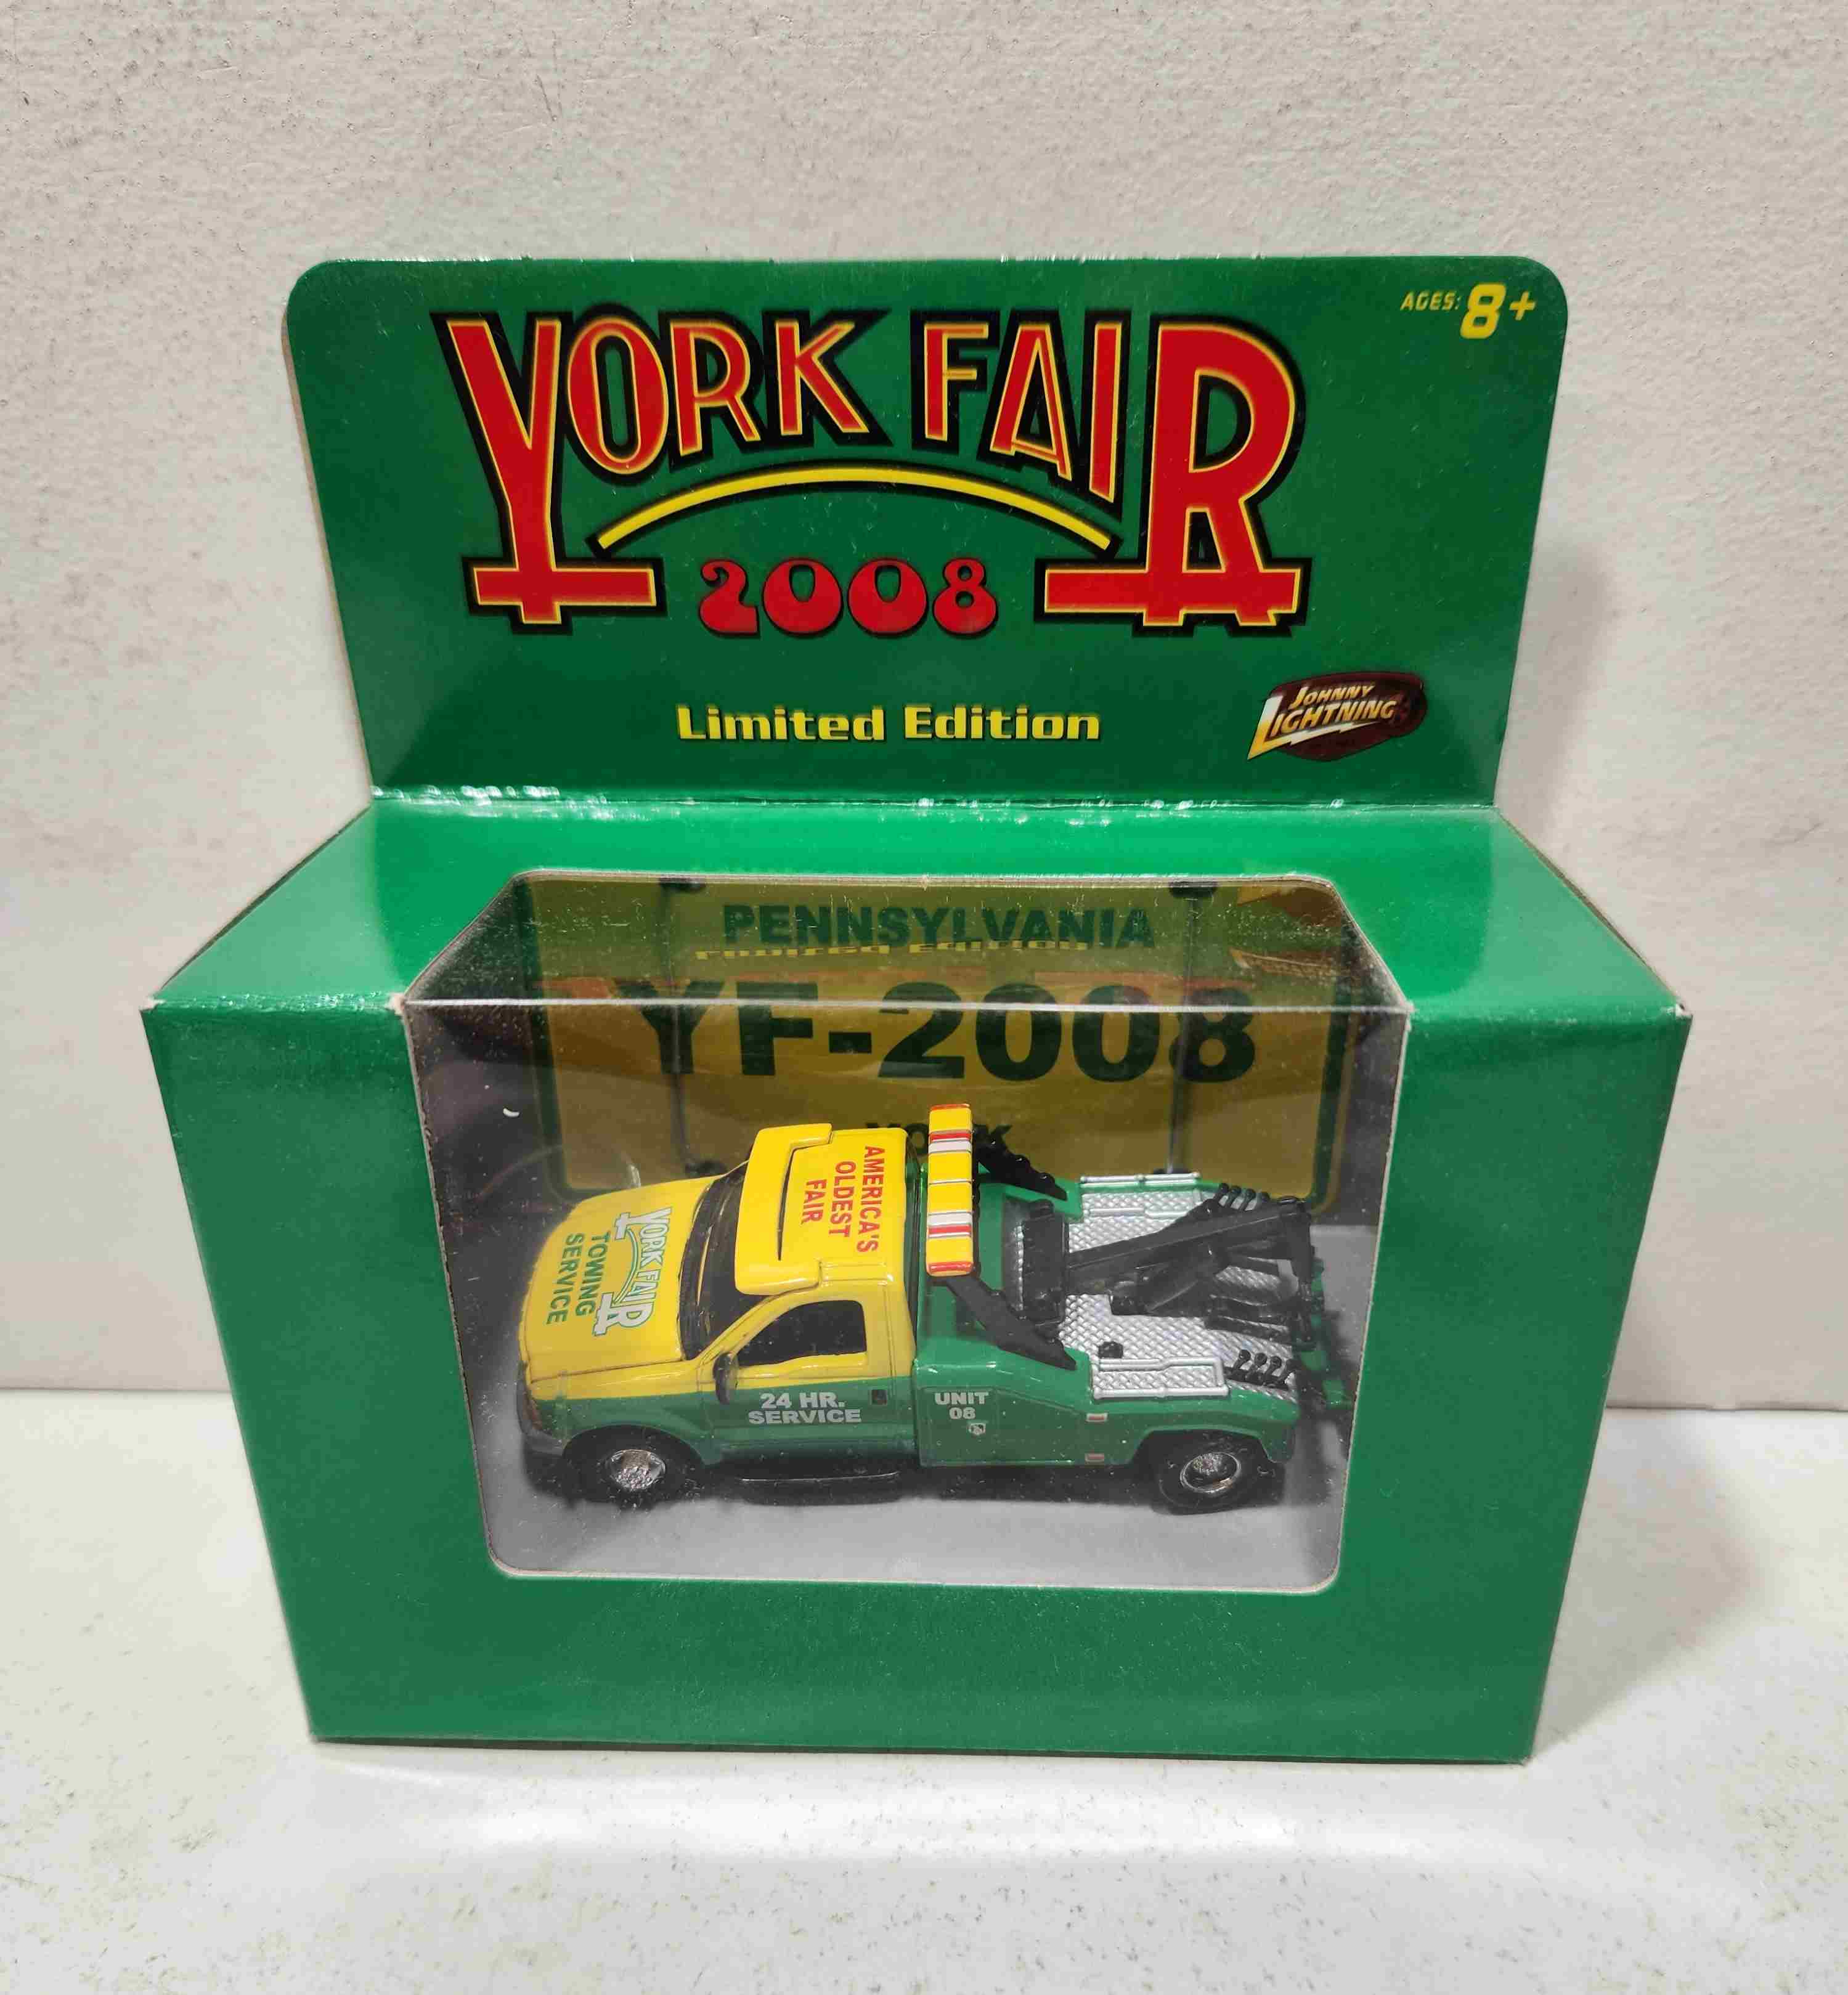 2008 York Fair 1/64th Tow Truck